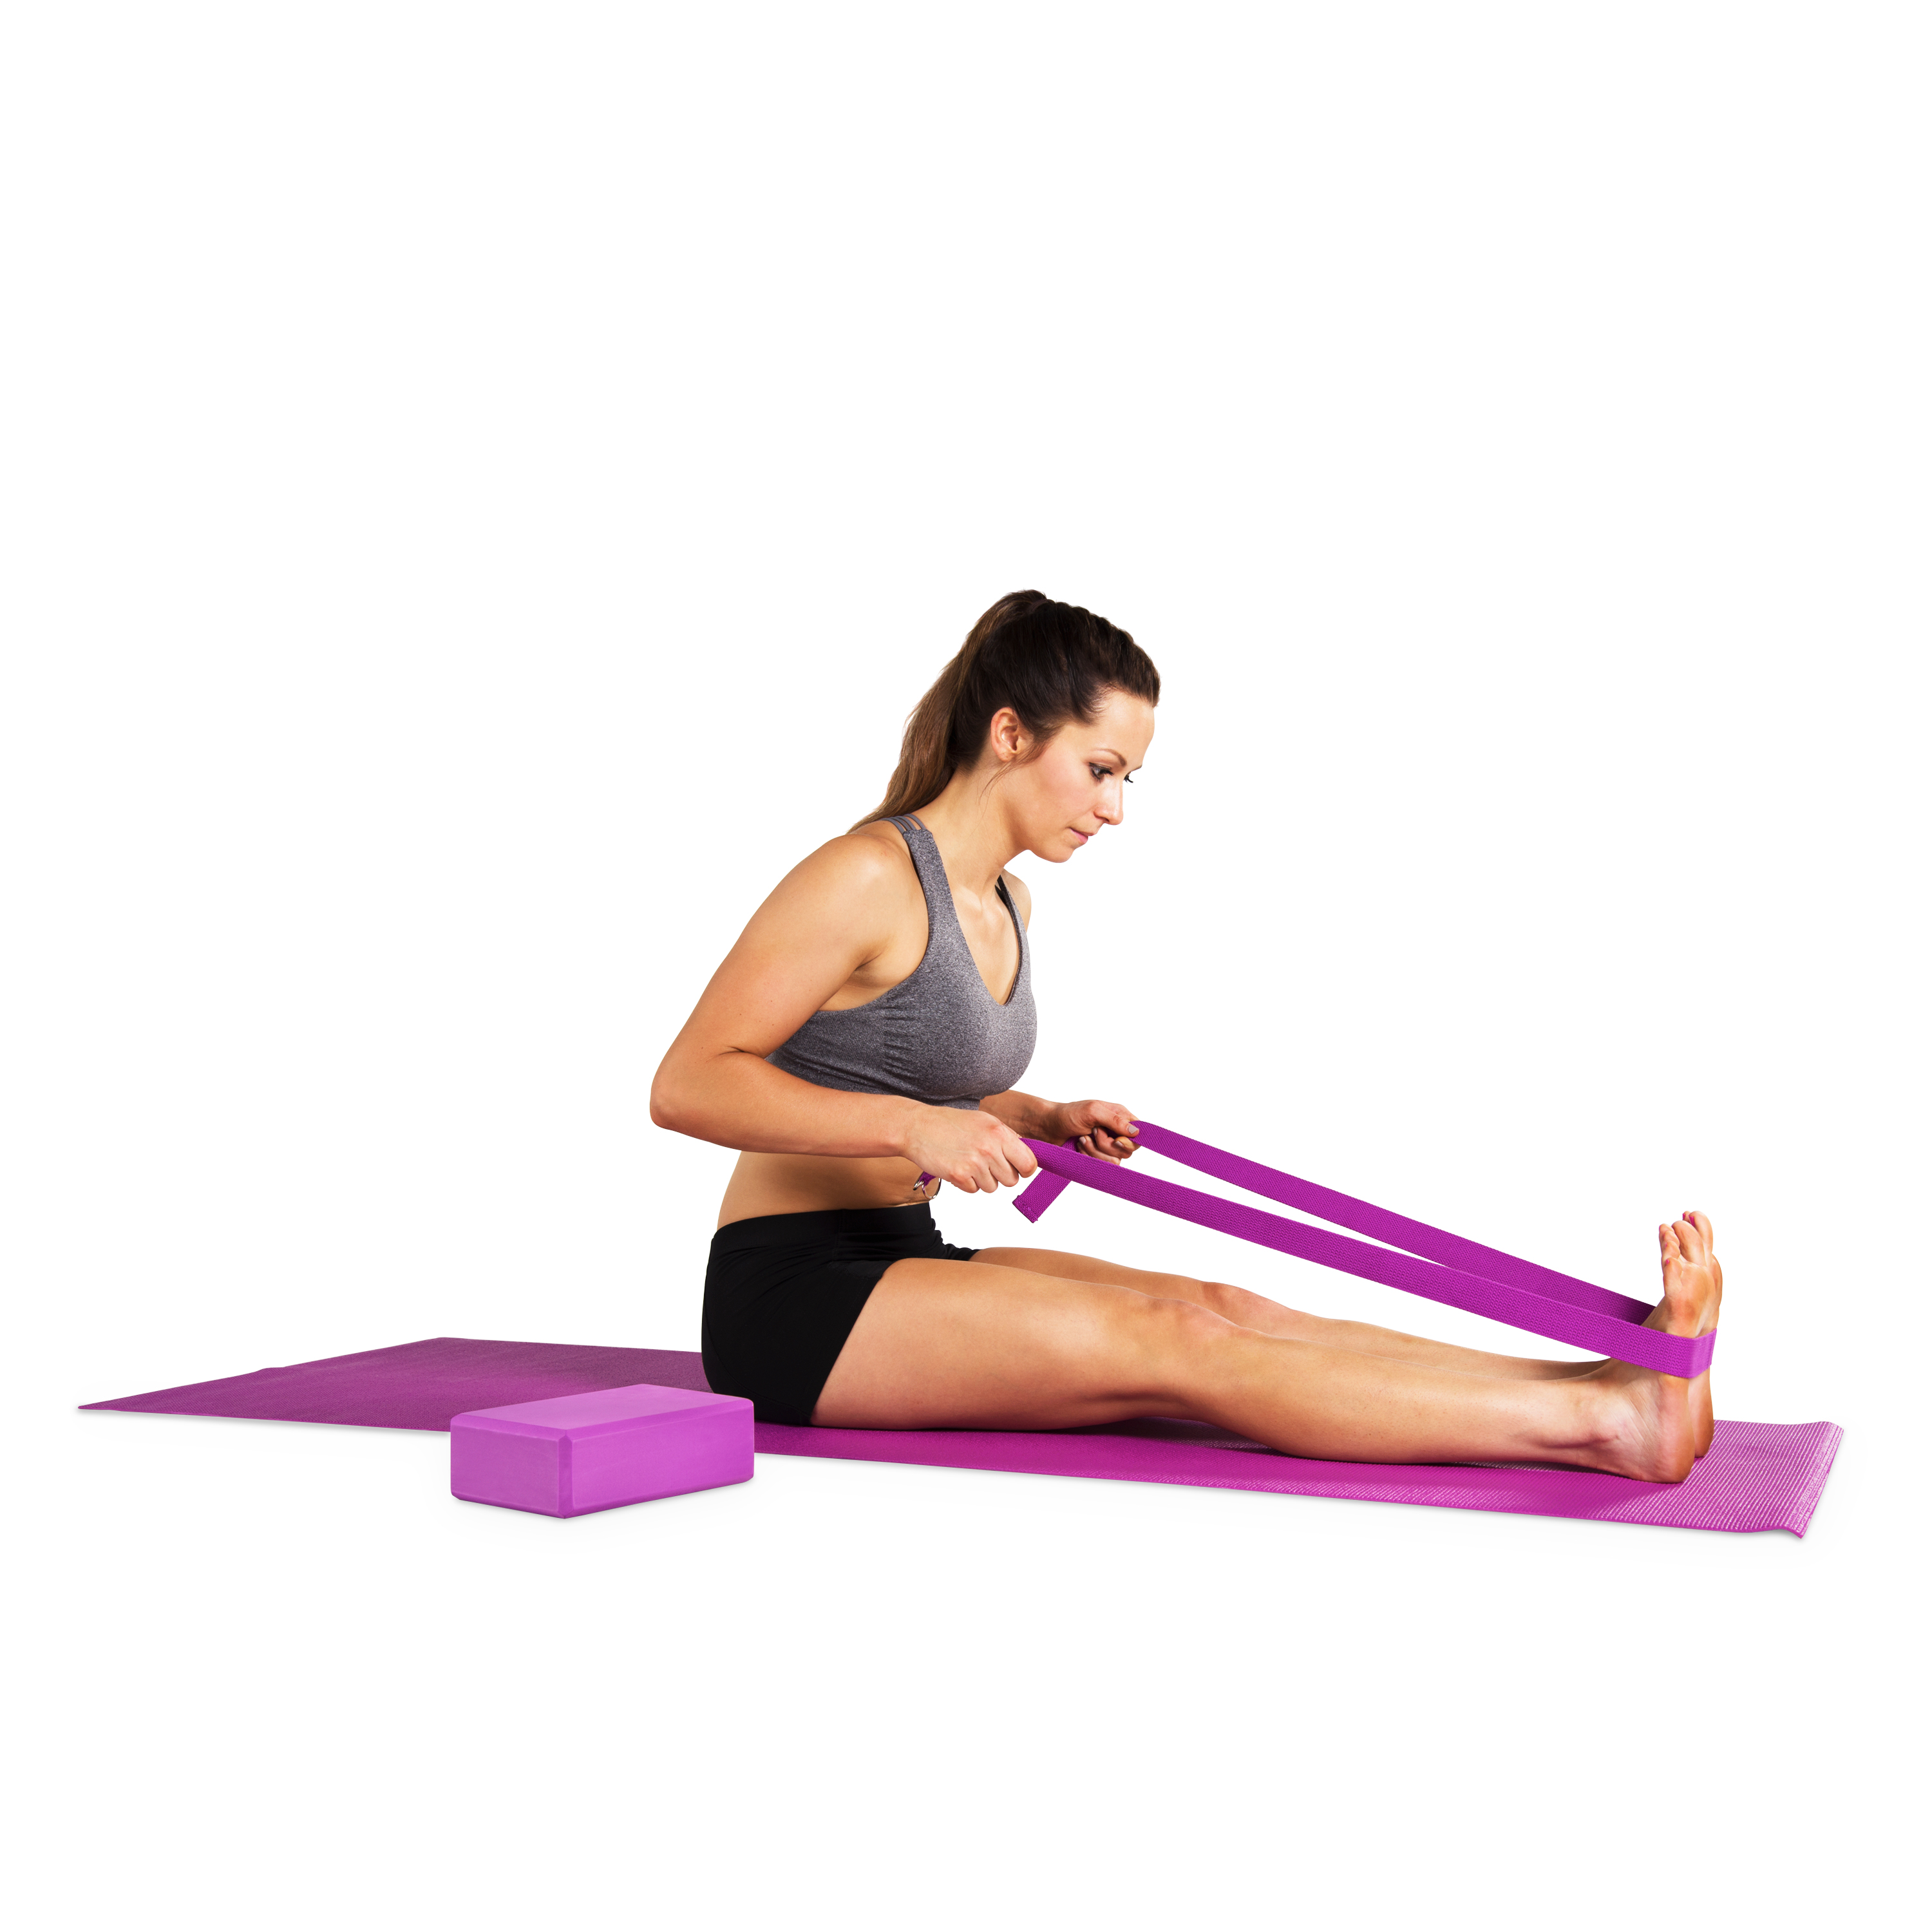 Tone Fitness Yoga Kit - image 5 of 8